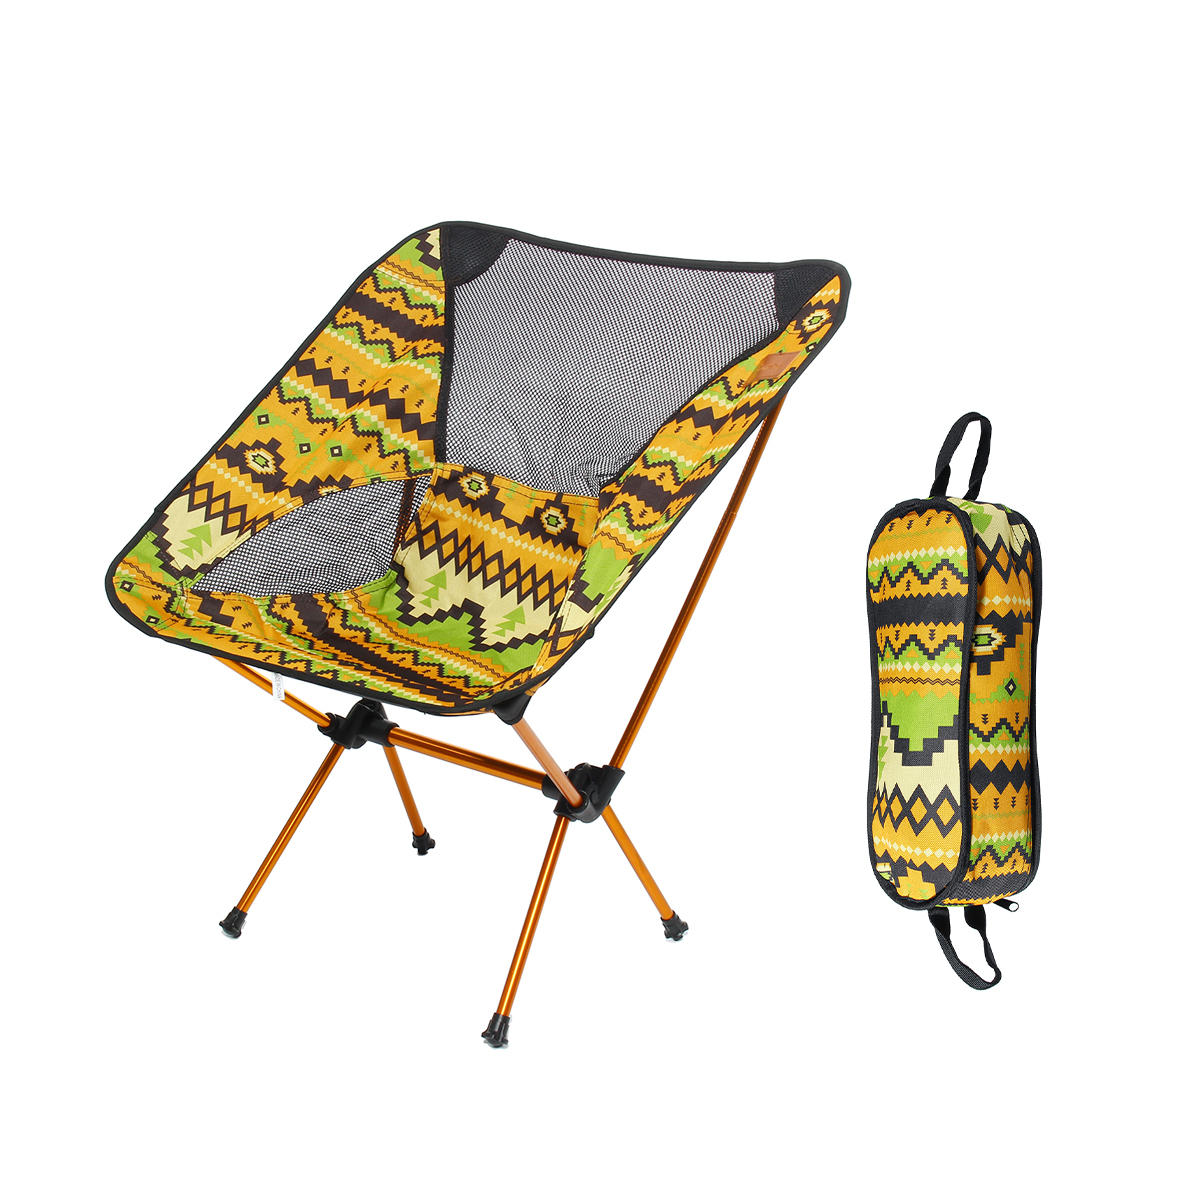 Cadeira dobrável portátil em liga de alumínio para churrasco e camping, carga máxima de 150 kg.